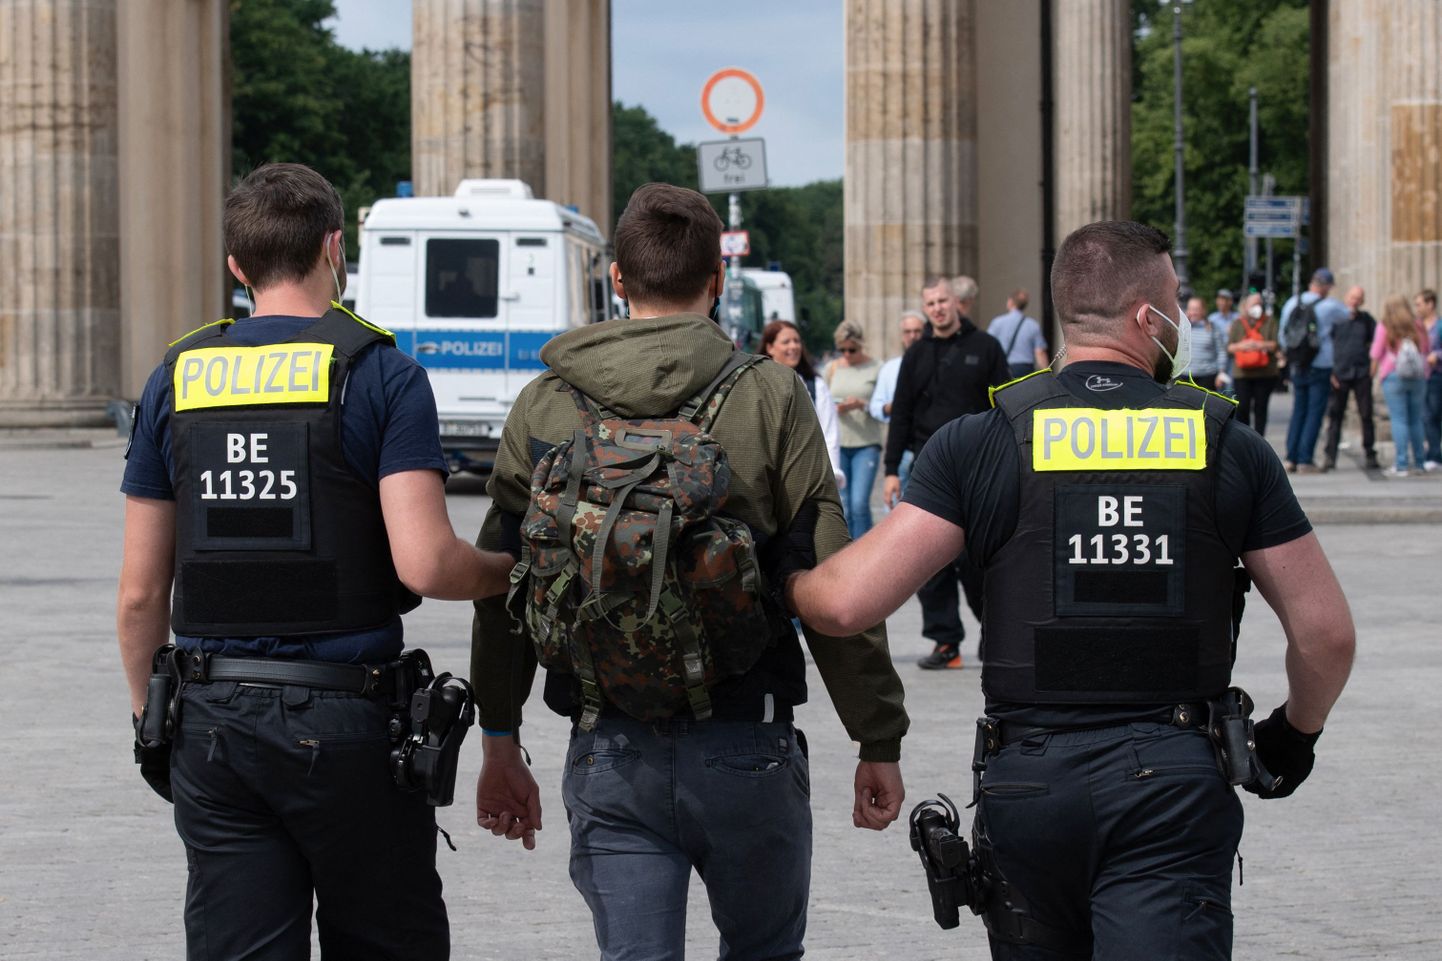 Saksa politsei augustis toimunud piirangutevastasel meeleavaldusel inimesi vahistamas.